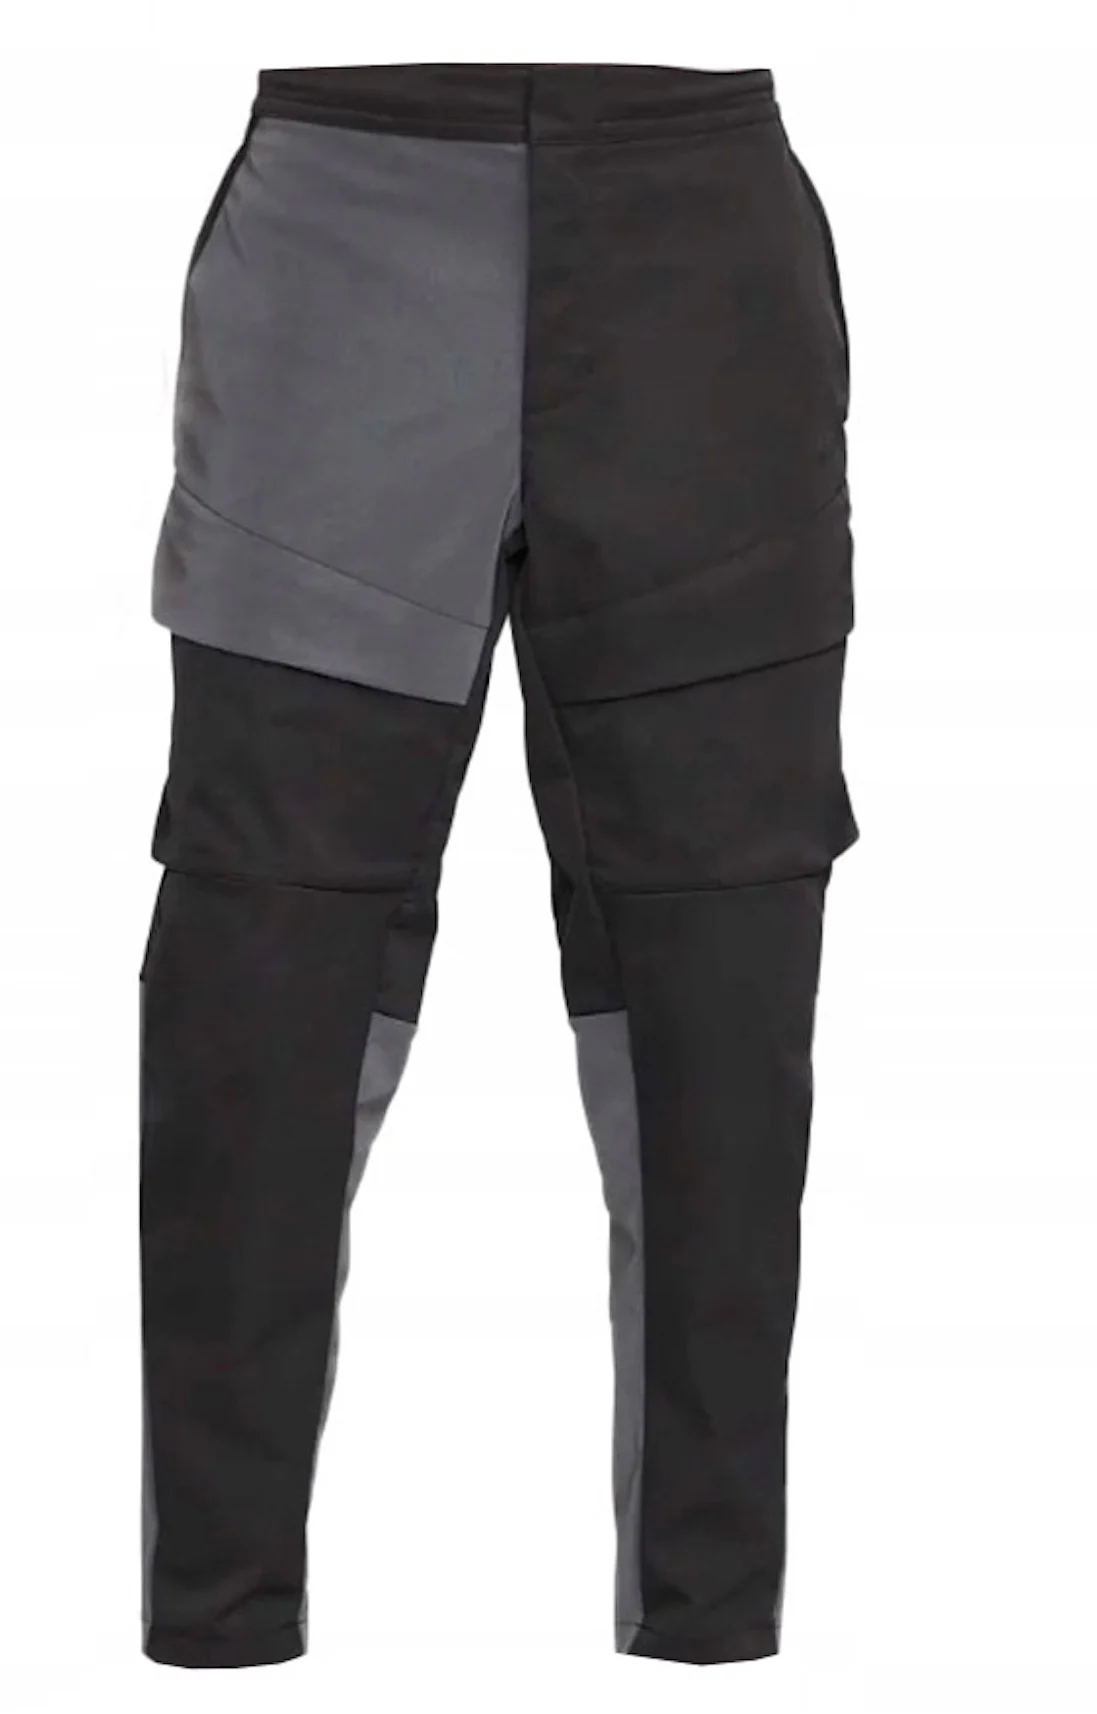 Nike Sportswear Tech Pack Reflective Unlined Cargo Pants Black/Grey Men's -  FW23 - US